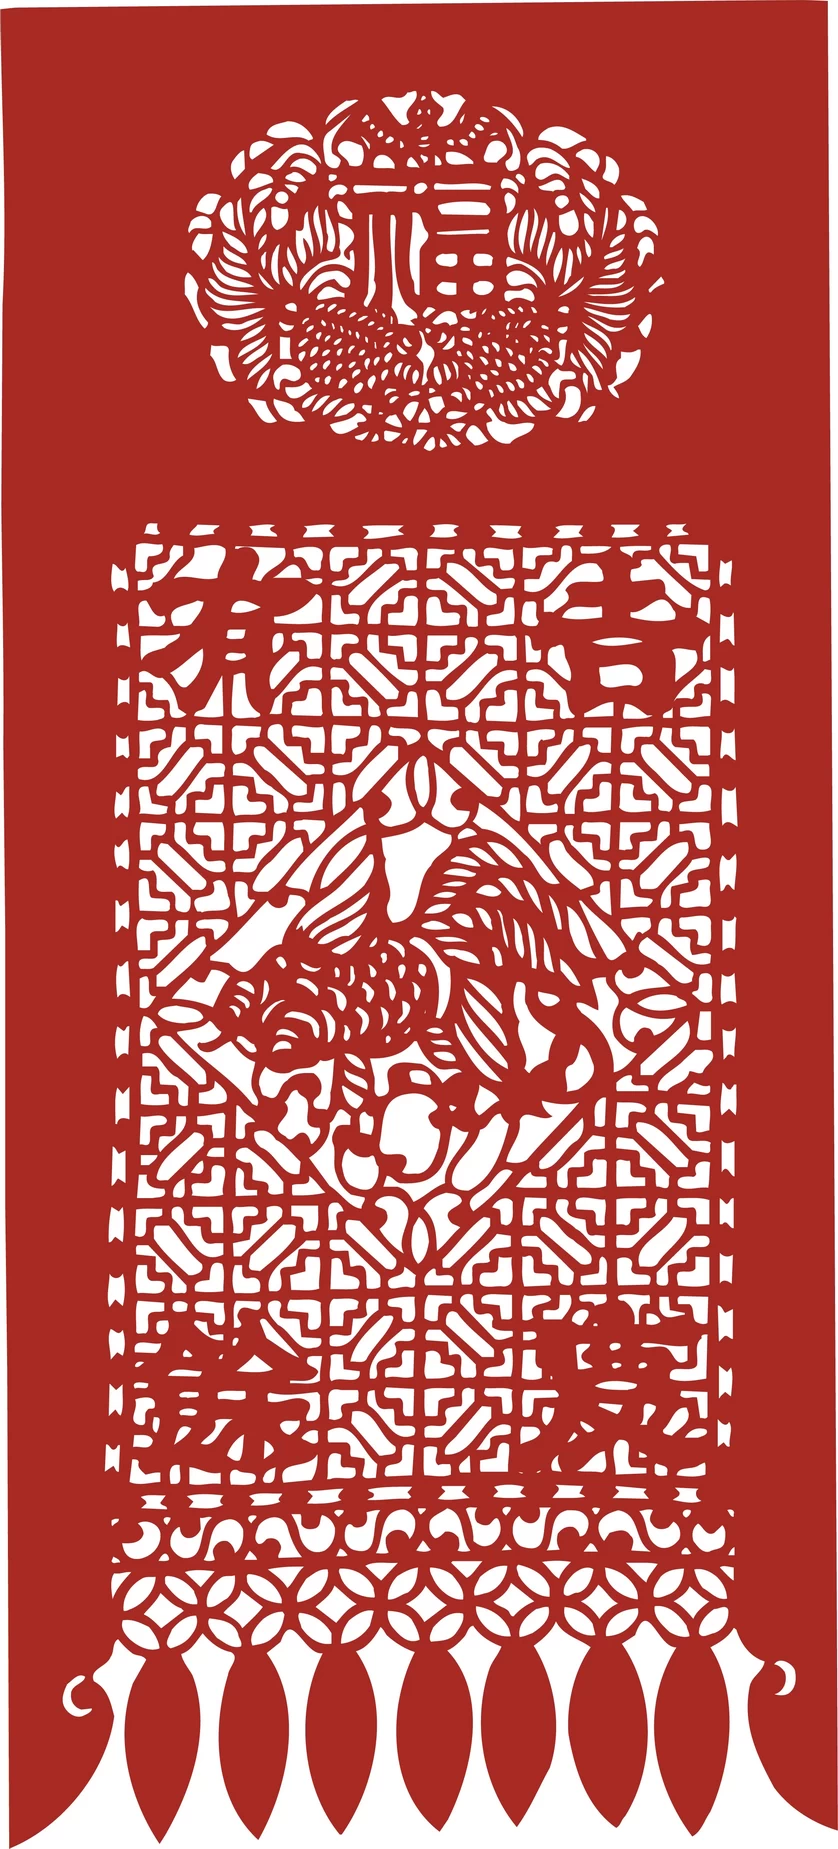 中国风中式传统喜庆民俗人物动物窗花剪纸插画边框AI矢量PNG素材【1952】